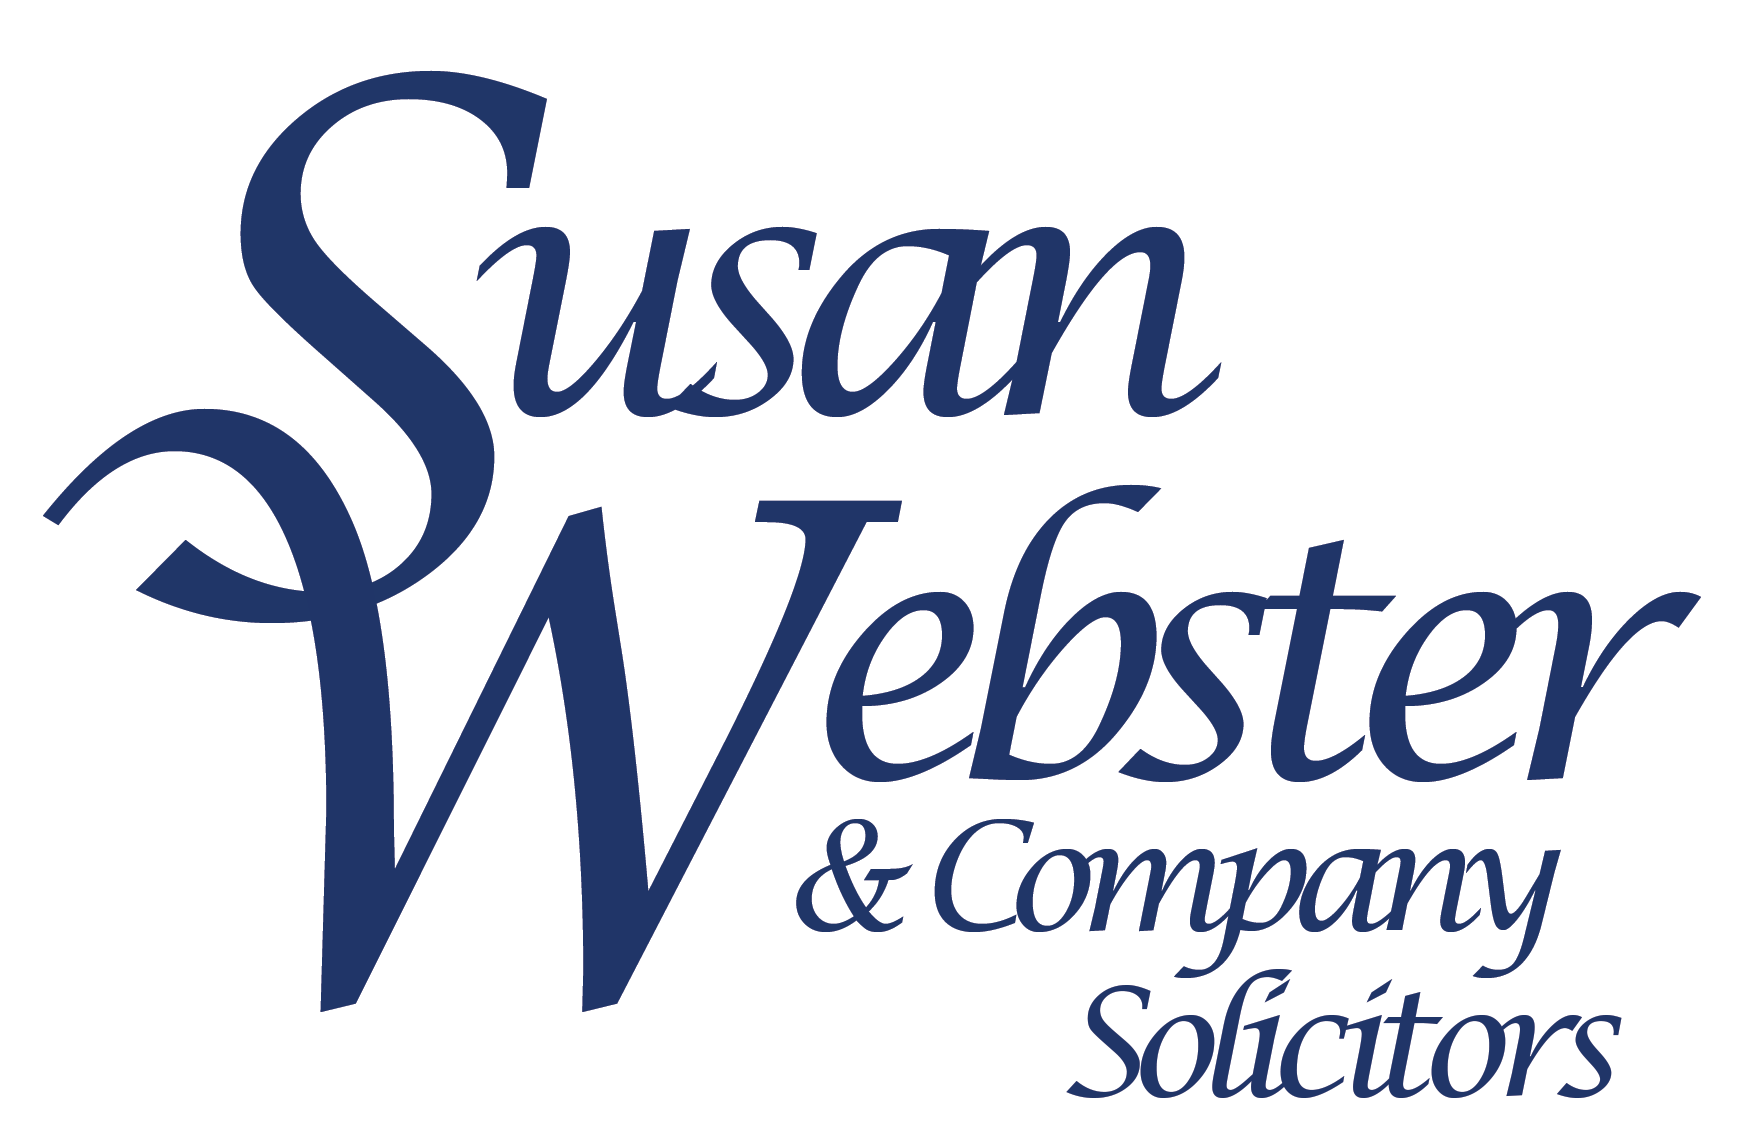 Susan Webster & Co